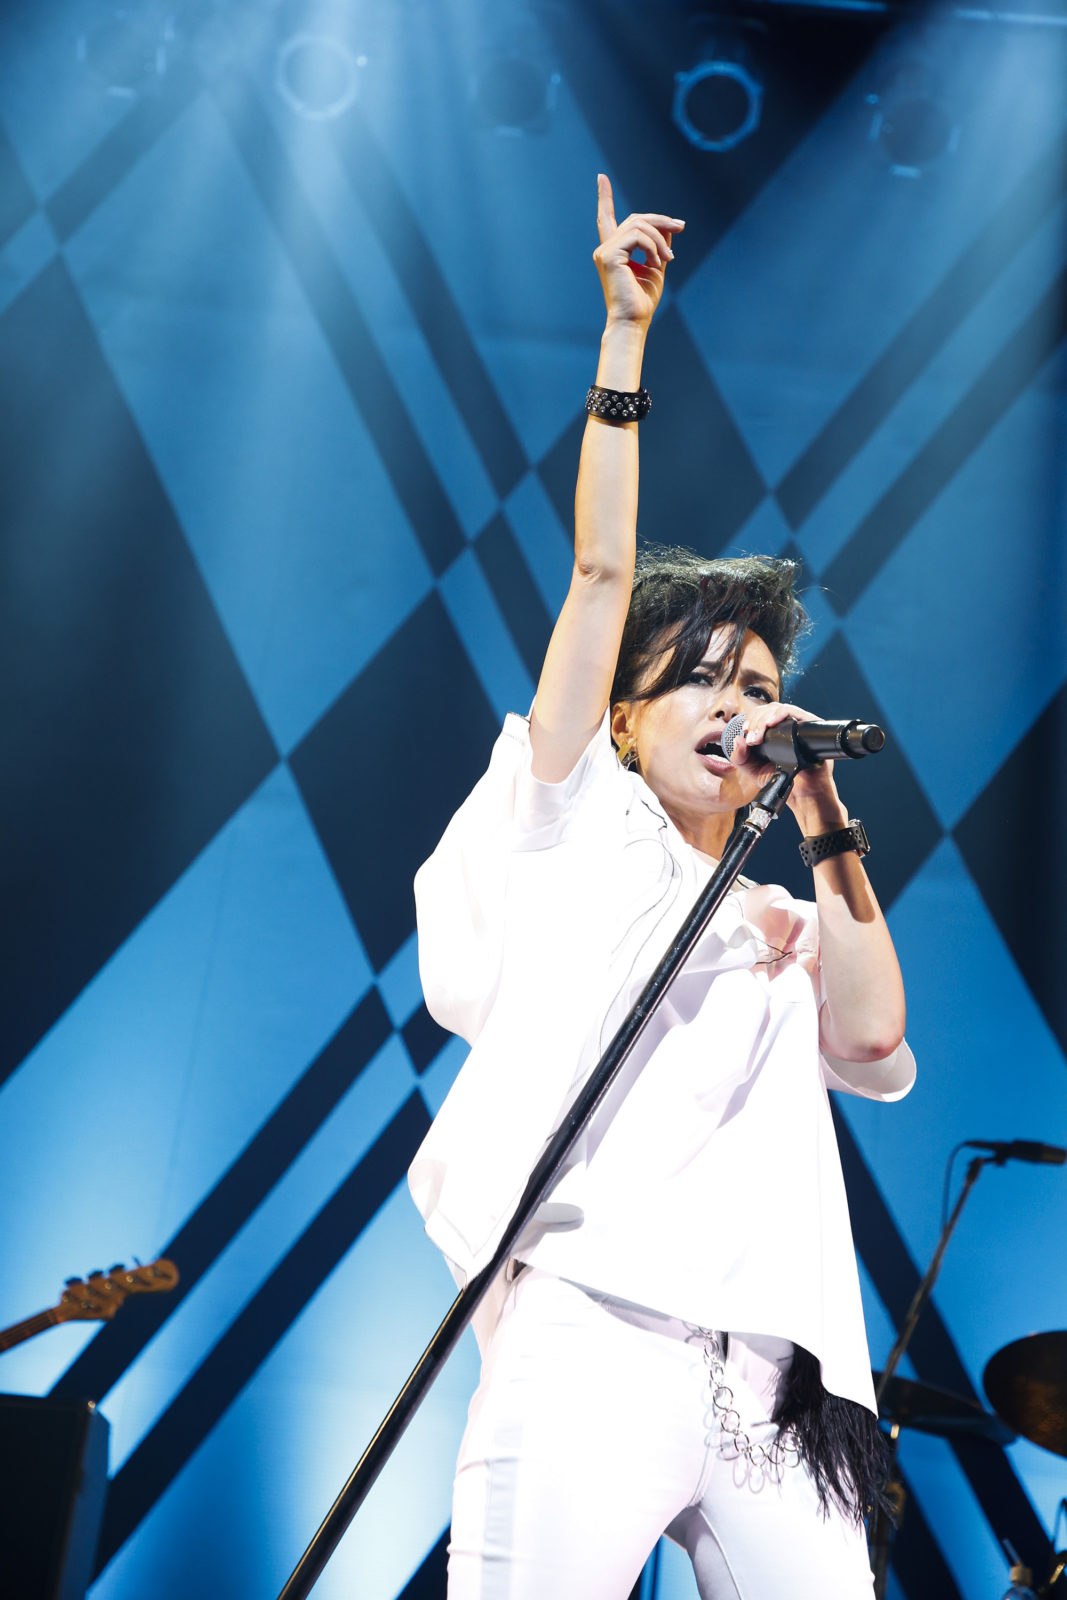 ロックシンガー相川七瀬、7月7日7時7分7秒に初の無観客ライブを開催サムネイル画像!